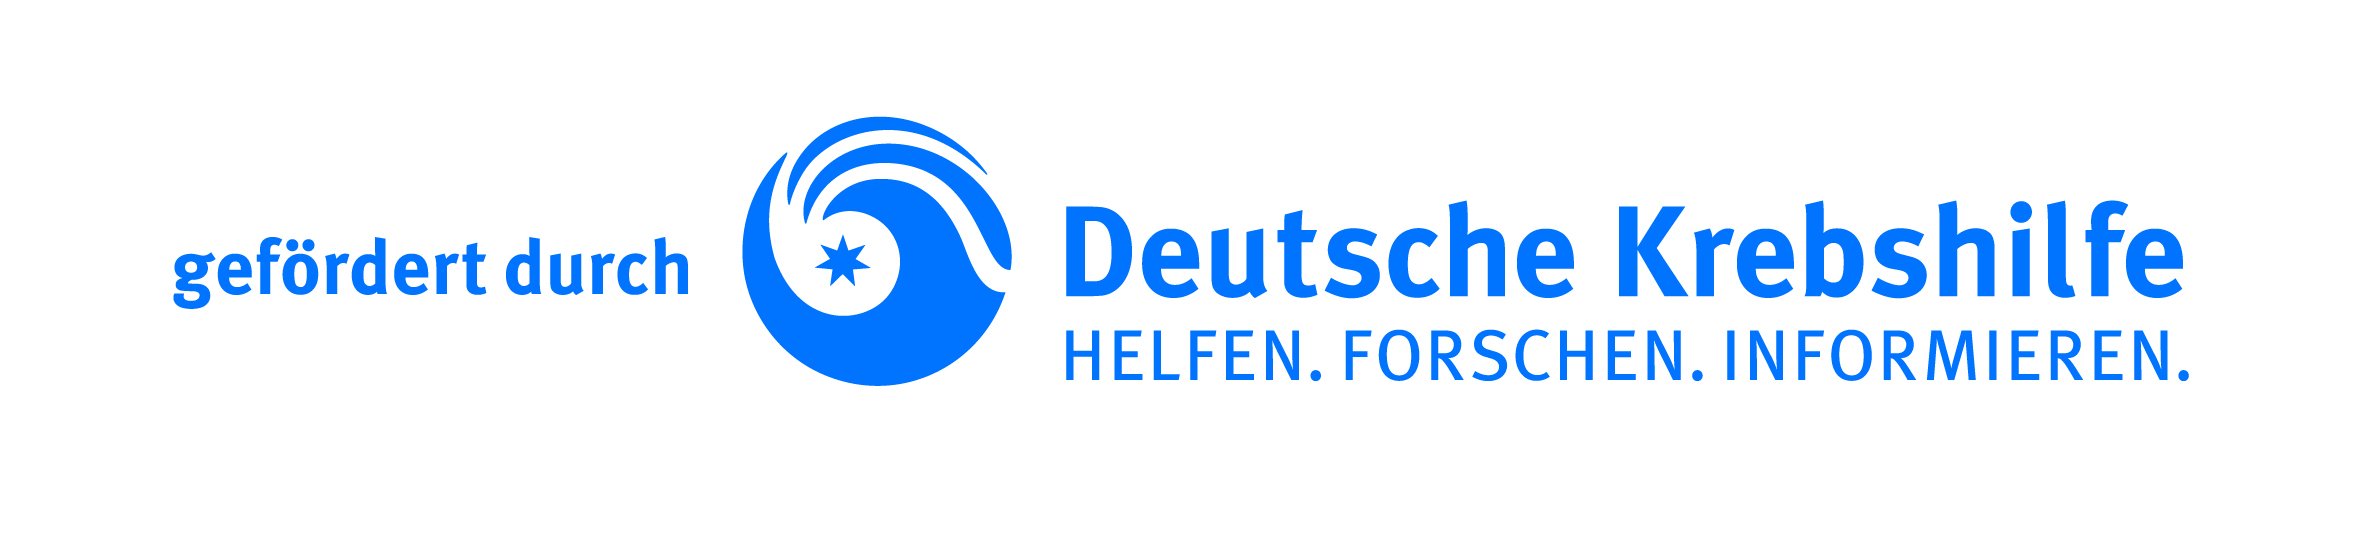 Deutsche Krebshilfe Logo: "gefördert durch Deutsche Krebshilfe. Helfen. Forschen. Informieren.